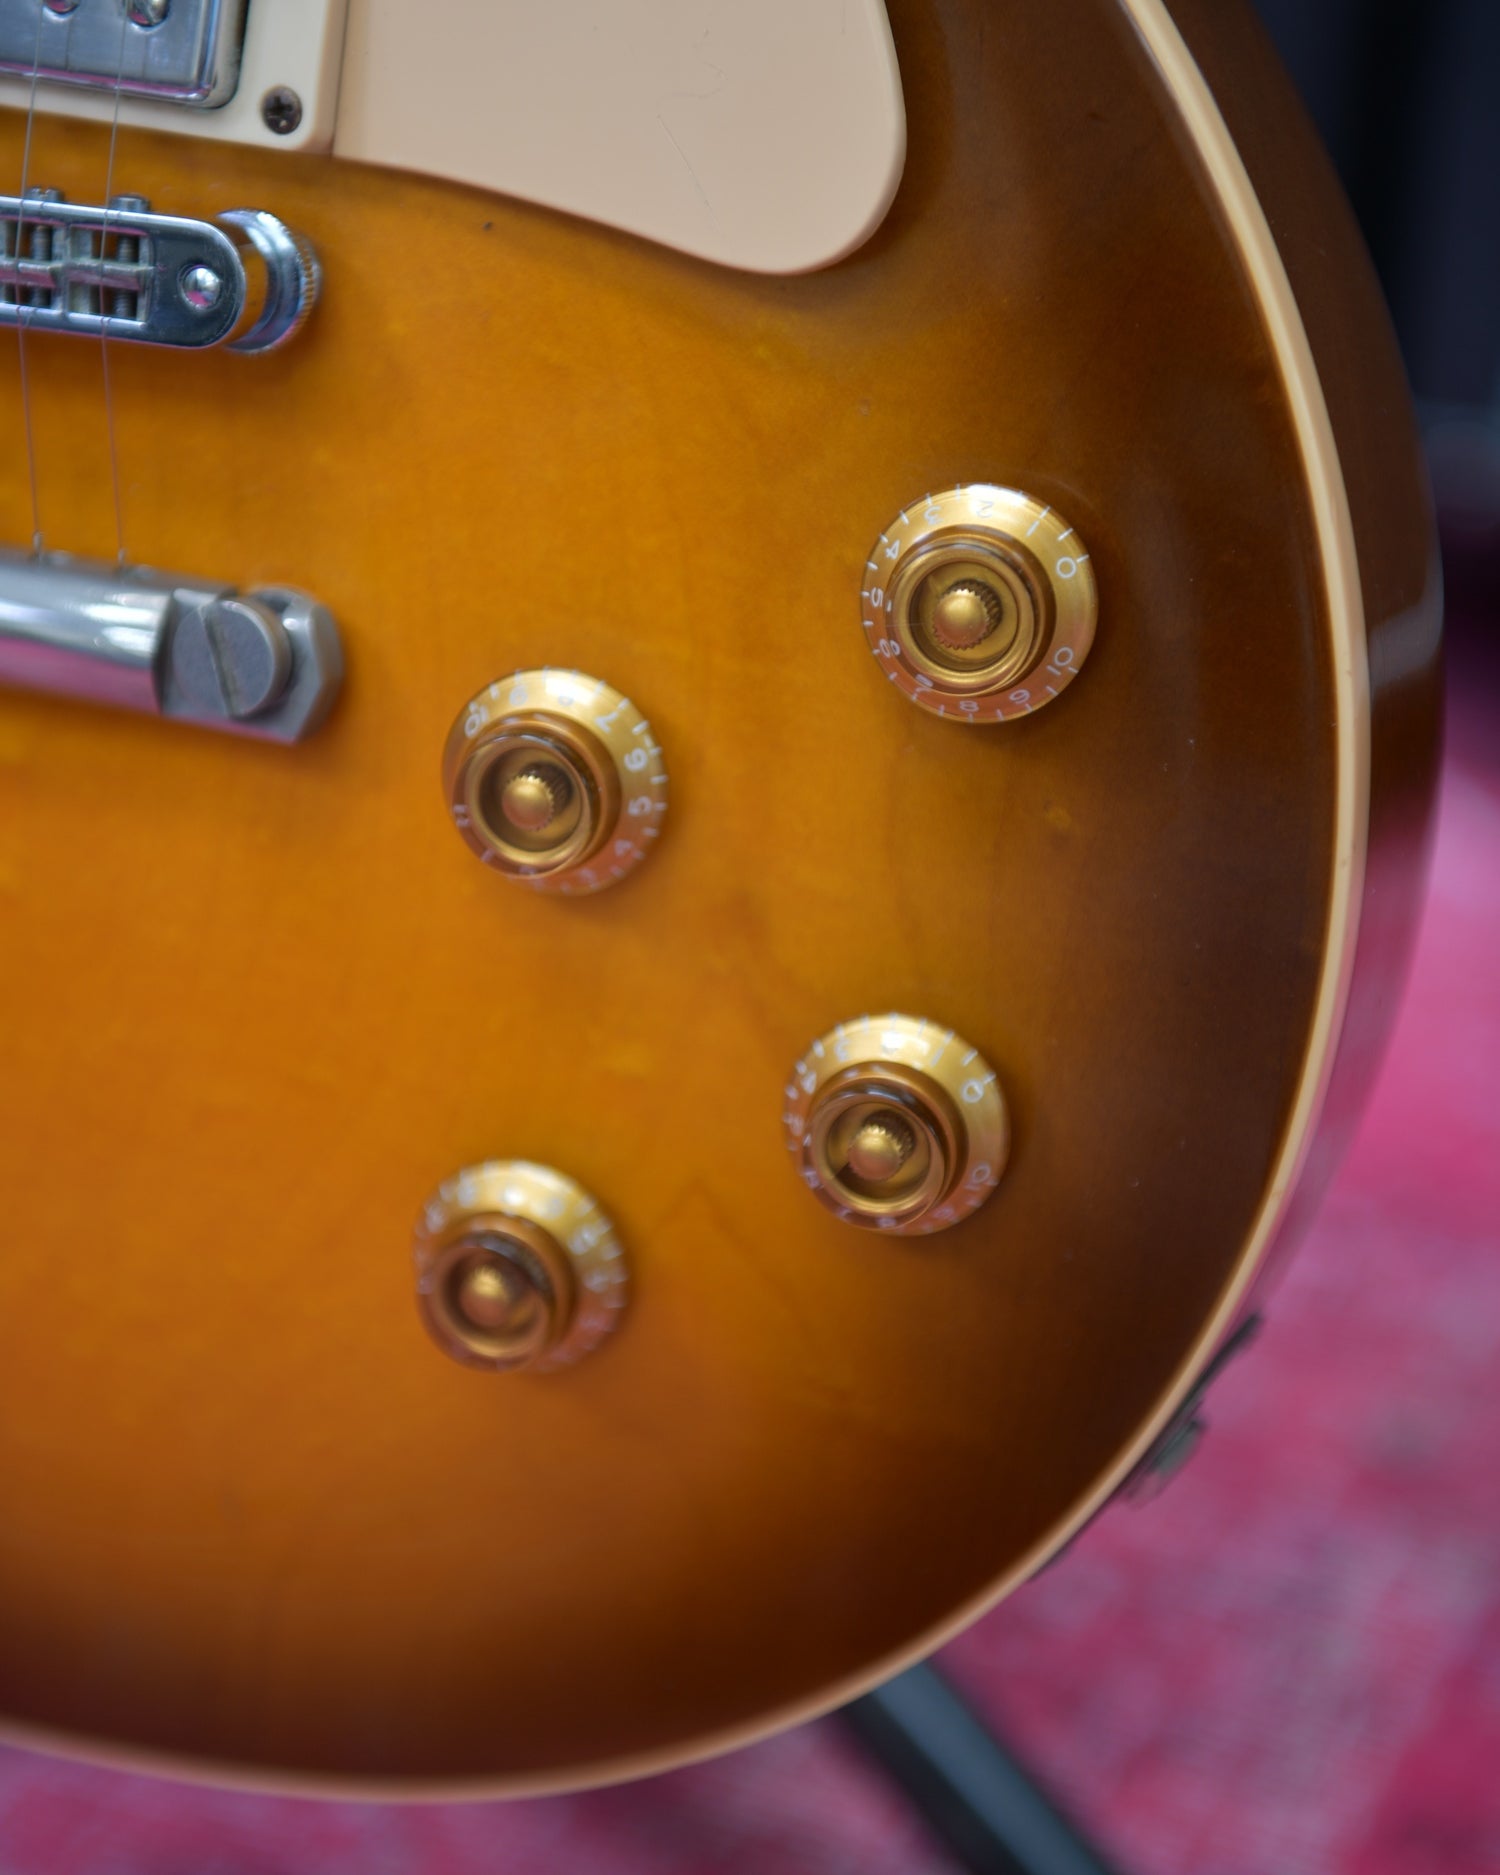 Gibson Les Paul Standard 2001 Honey Burst USA